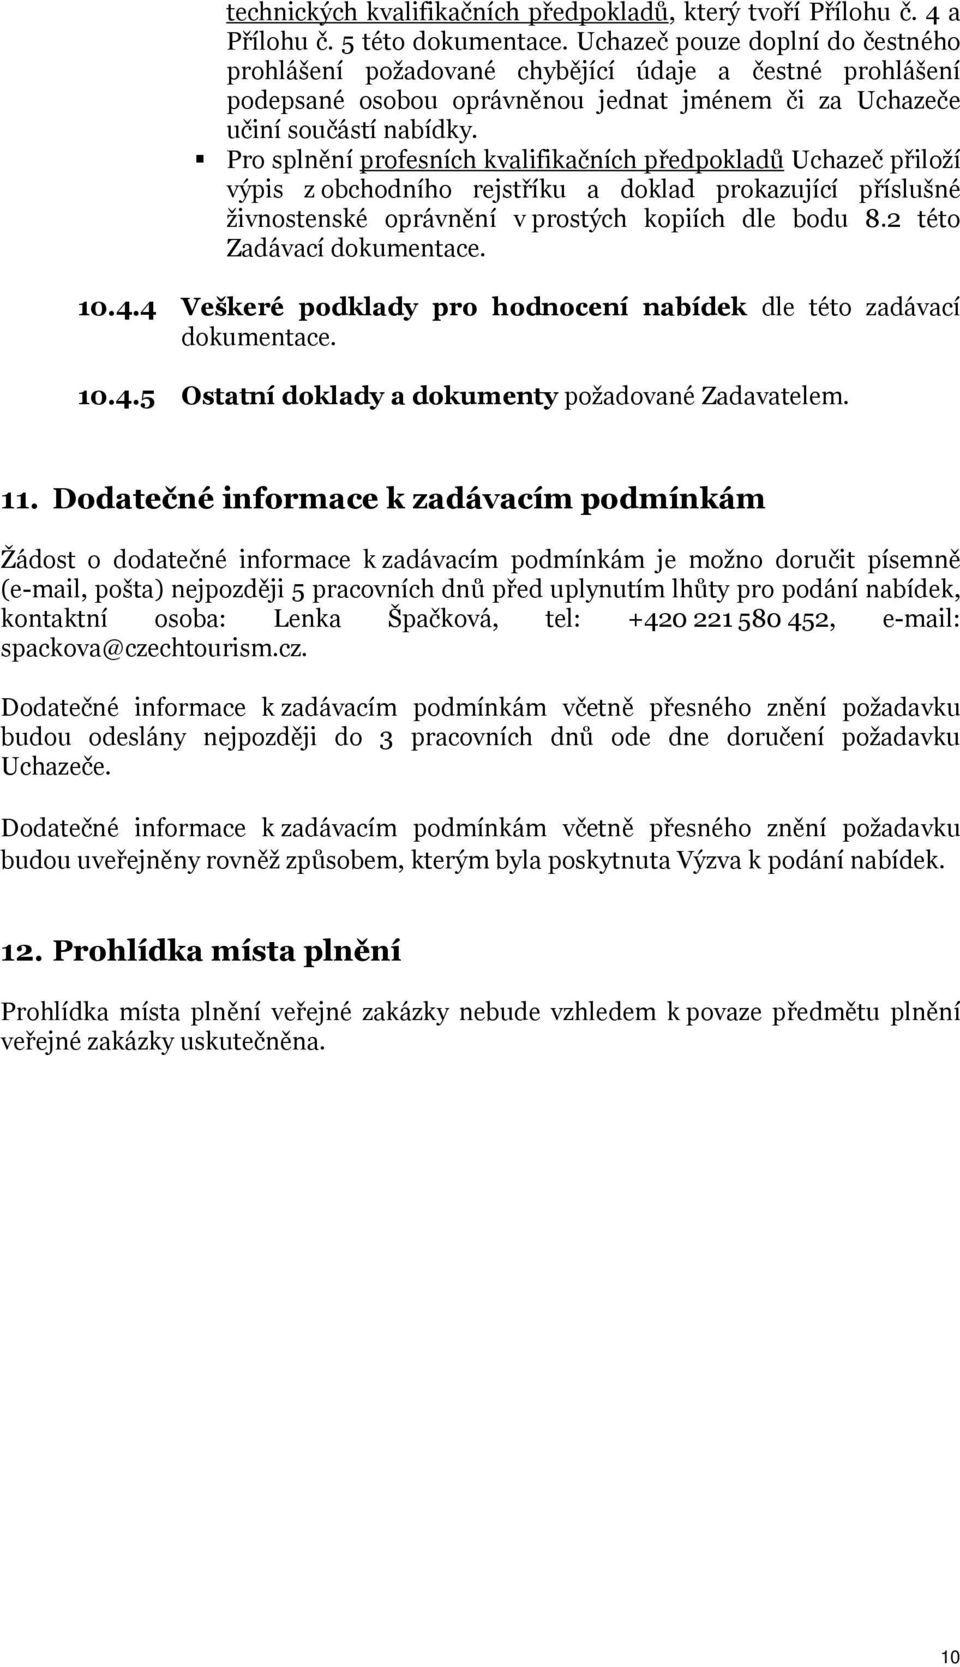 Pro splnění profesních kvalifikačních předpokladů Uchazeč přiloží výpis z obchodního rejstříku a doklad prokazující příslušné živnostenské oprávnění v prostých kopiích dle bodu 8.